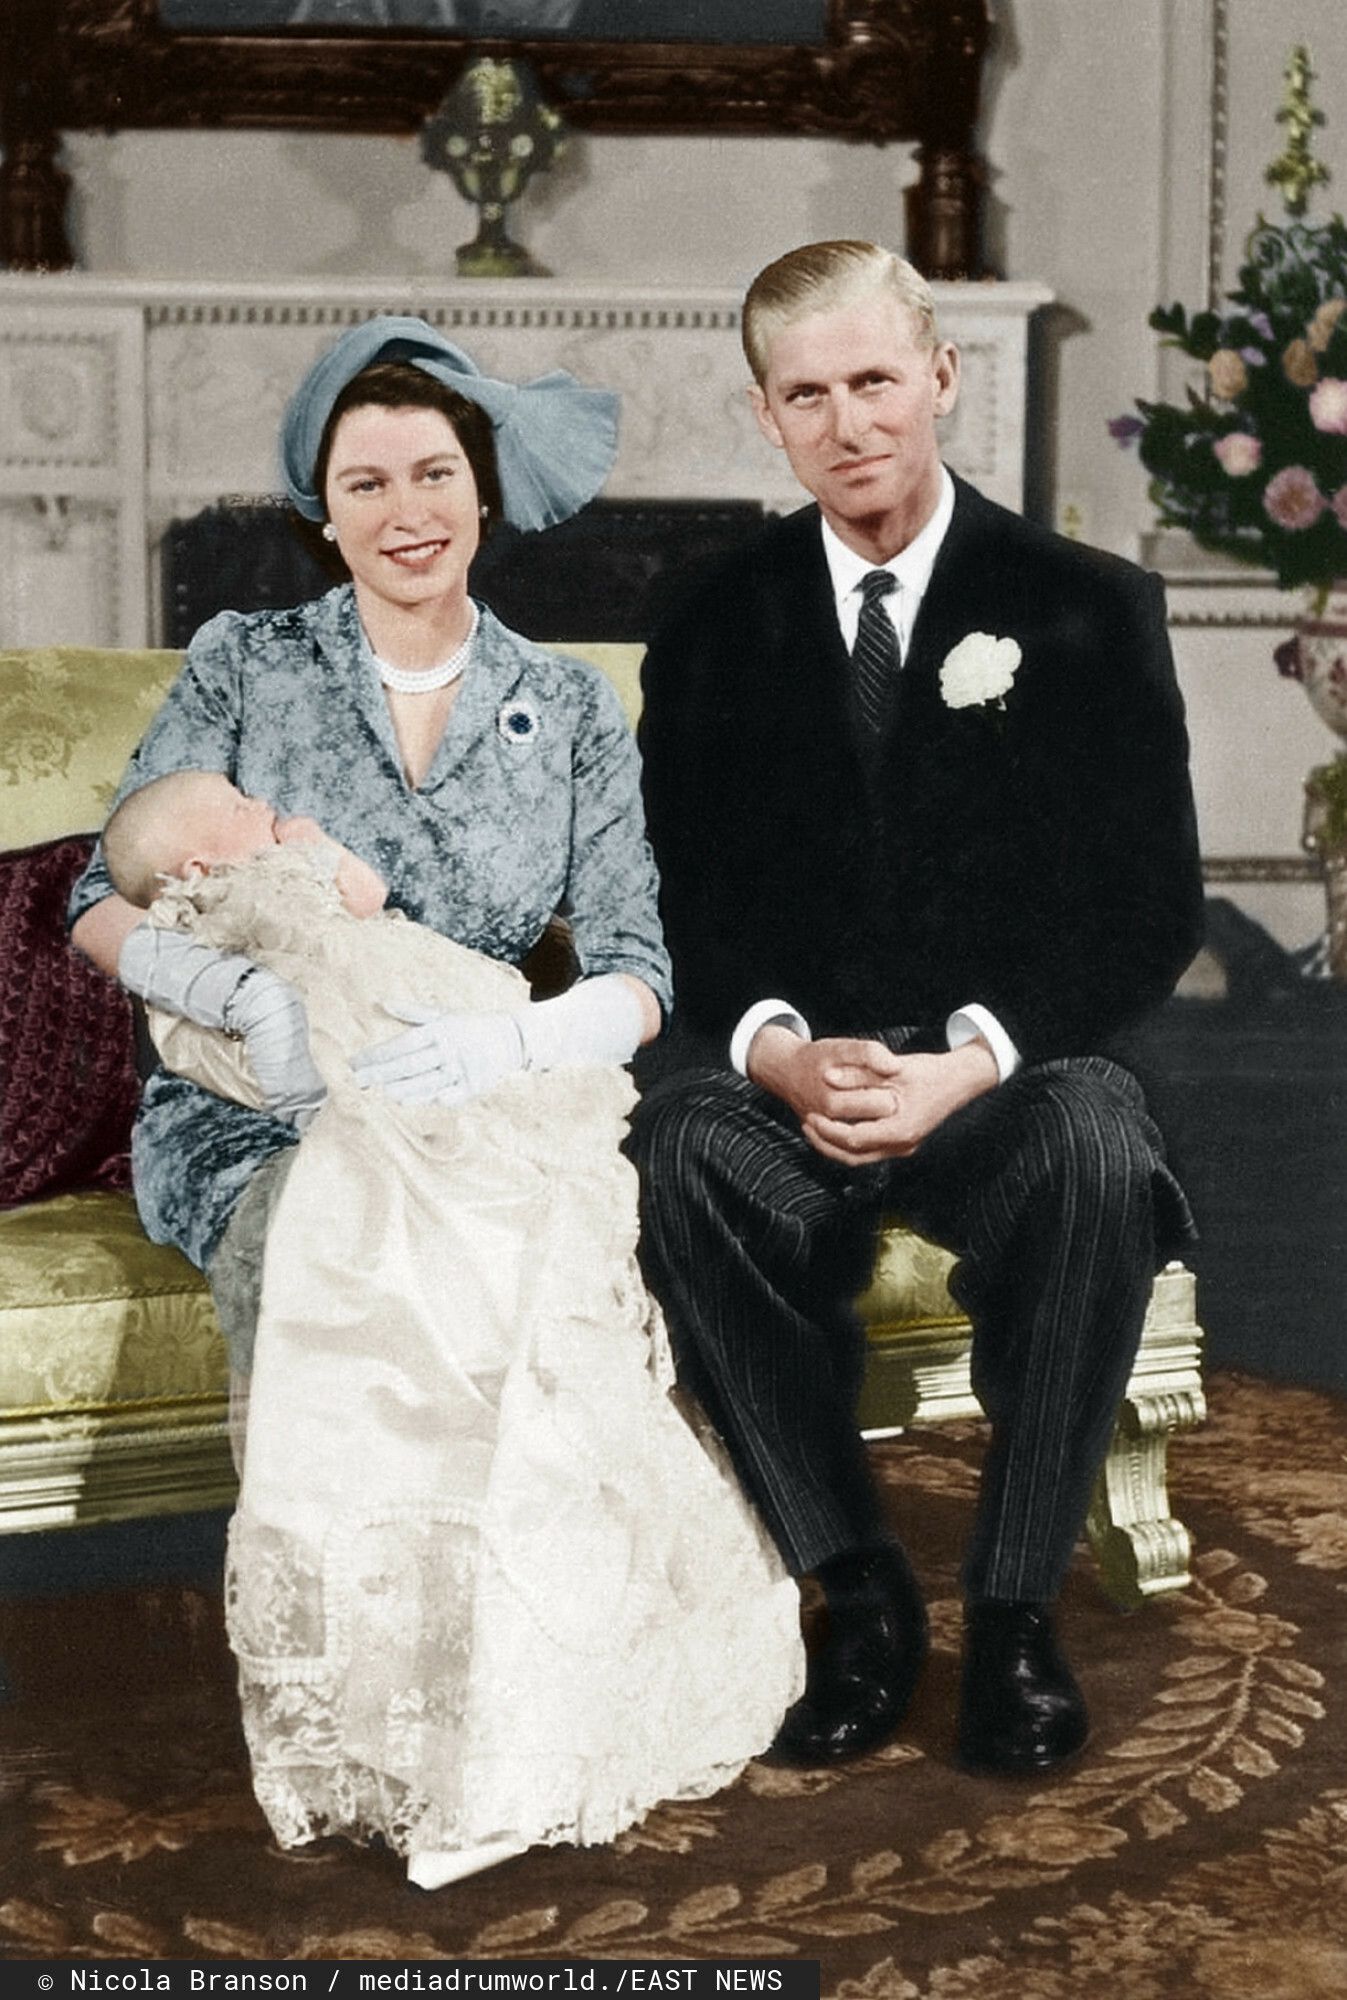 romanse brytyjskiej rodziny królewskiej, William i Rose Hanbury, Karol i Kamila, księżna Diana, Elżbieta II i książę Filip